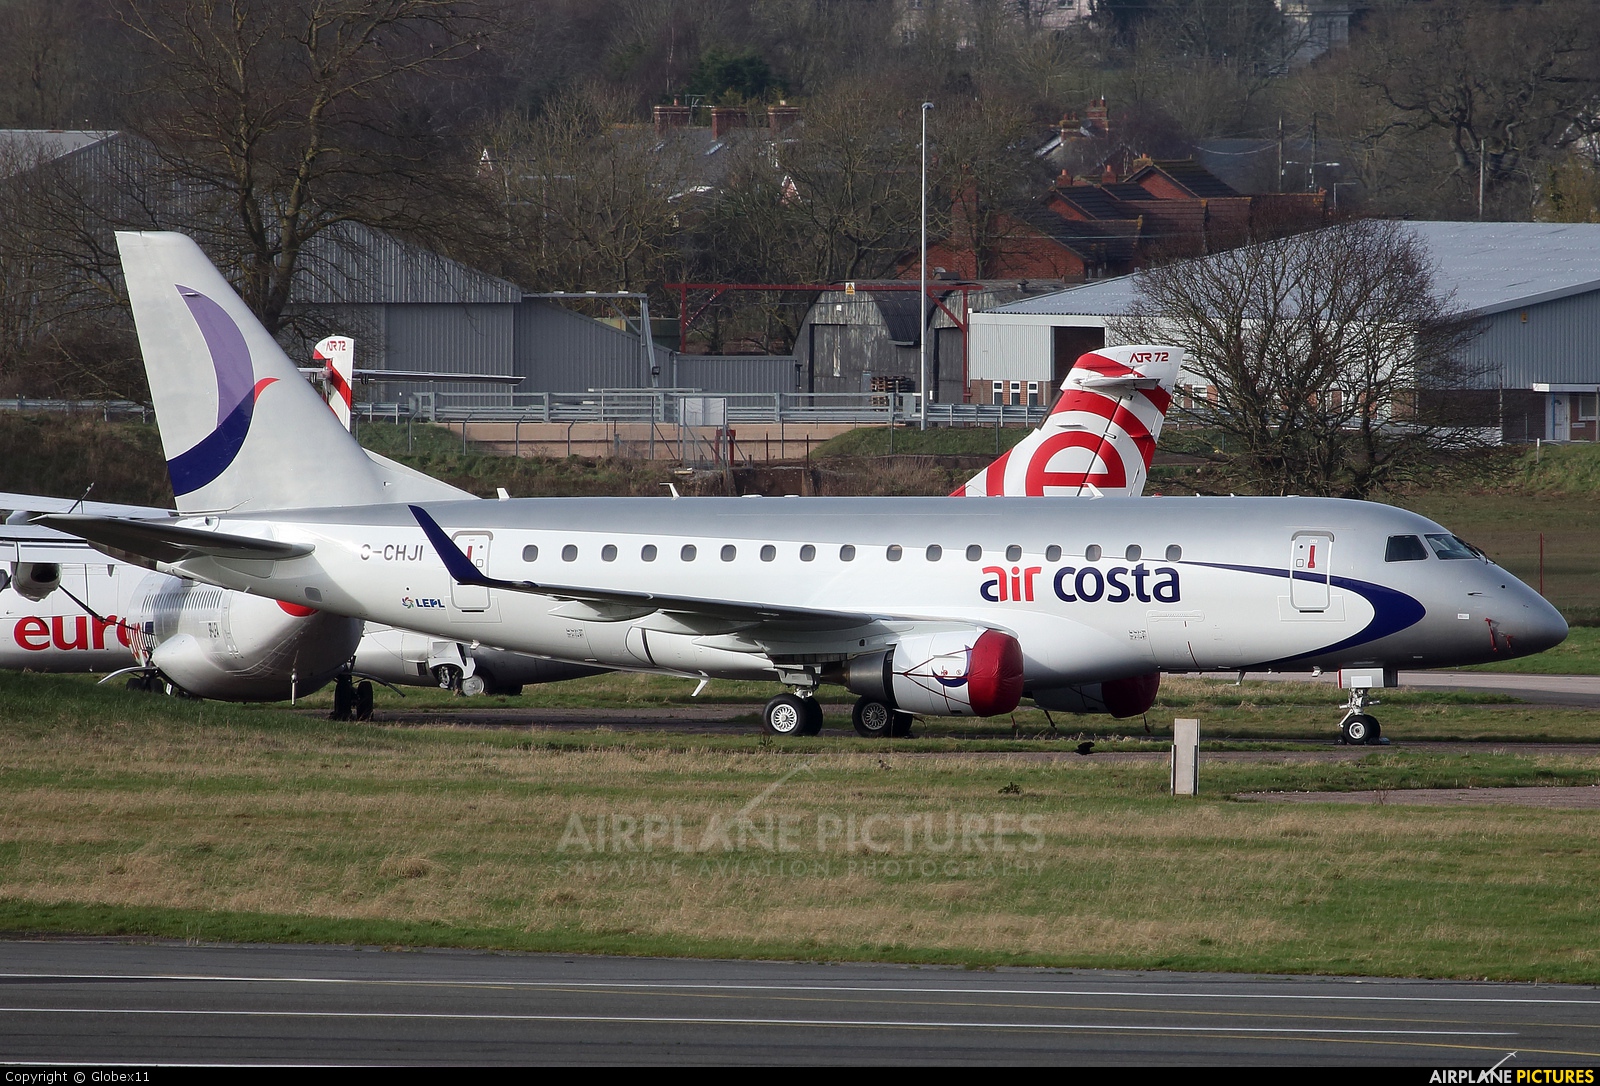 Air Costa G-CHJI aircraft at Exeter